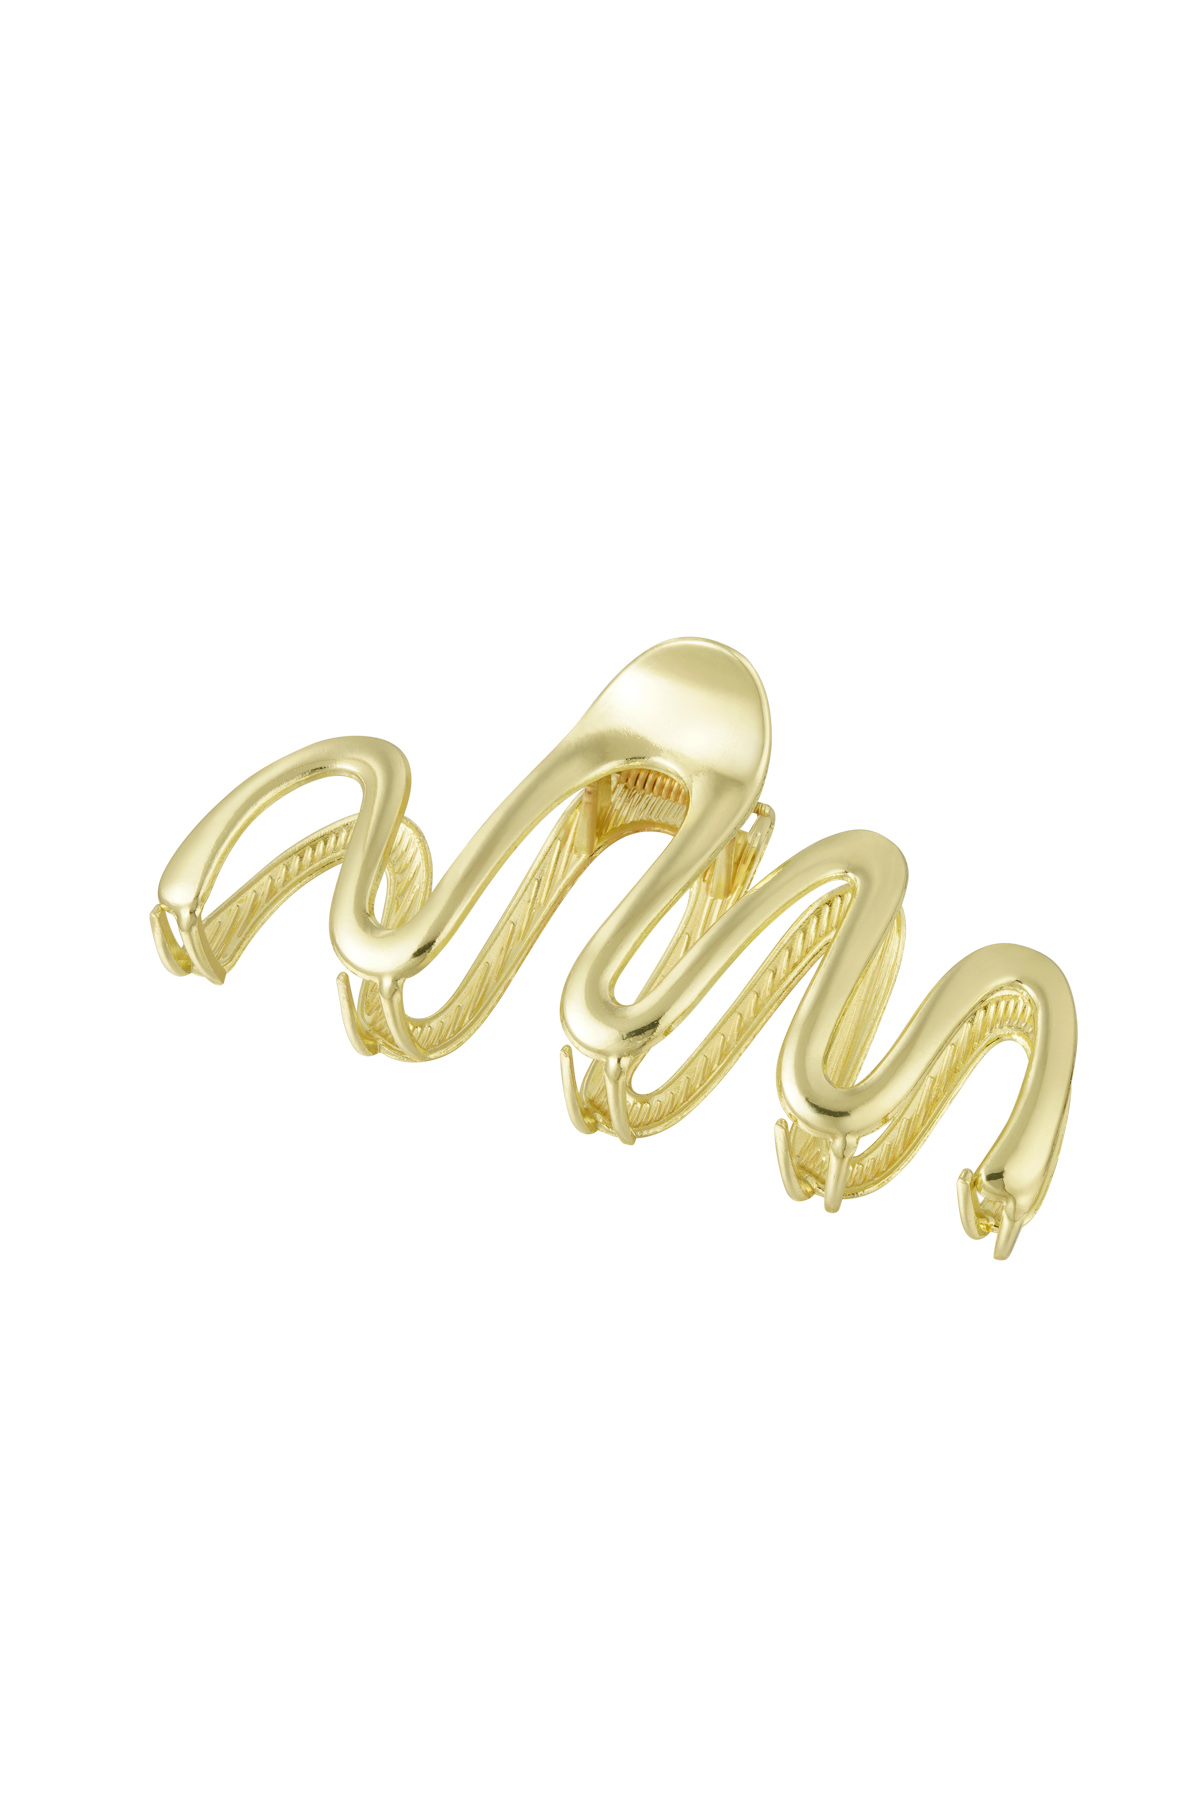 Hair clip curl - gold Metal h5 